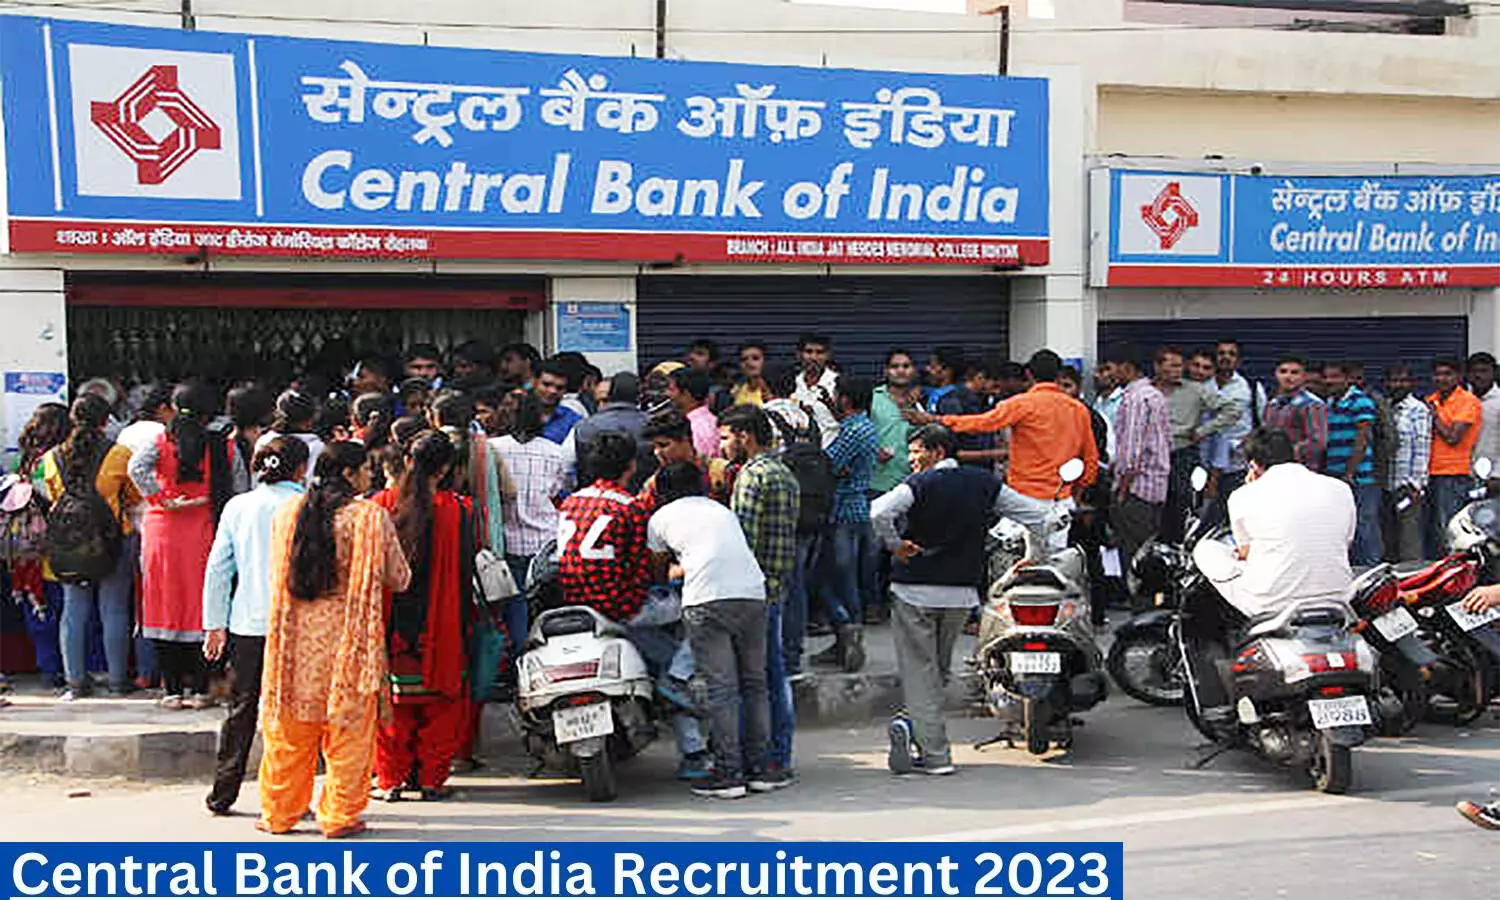 Central Bank of India Recruitment 2023: सेंट्रल बैंक ऑफ इंडिया में 1 हजार पदों के लिए निकली वैकेंसी, यह होनी चाहिए क्वालिफिकेशन व एज लिमिट